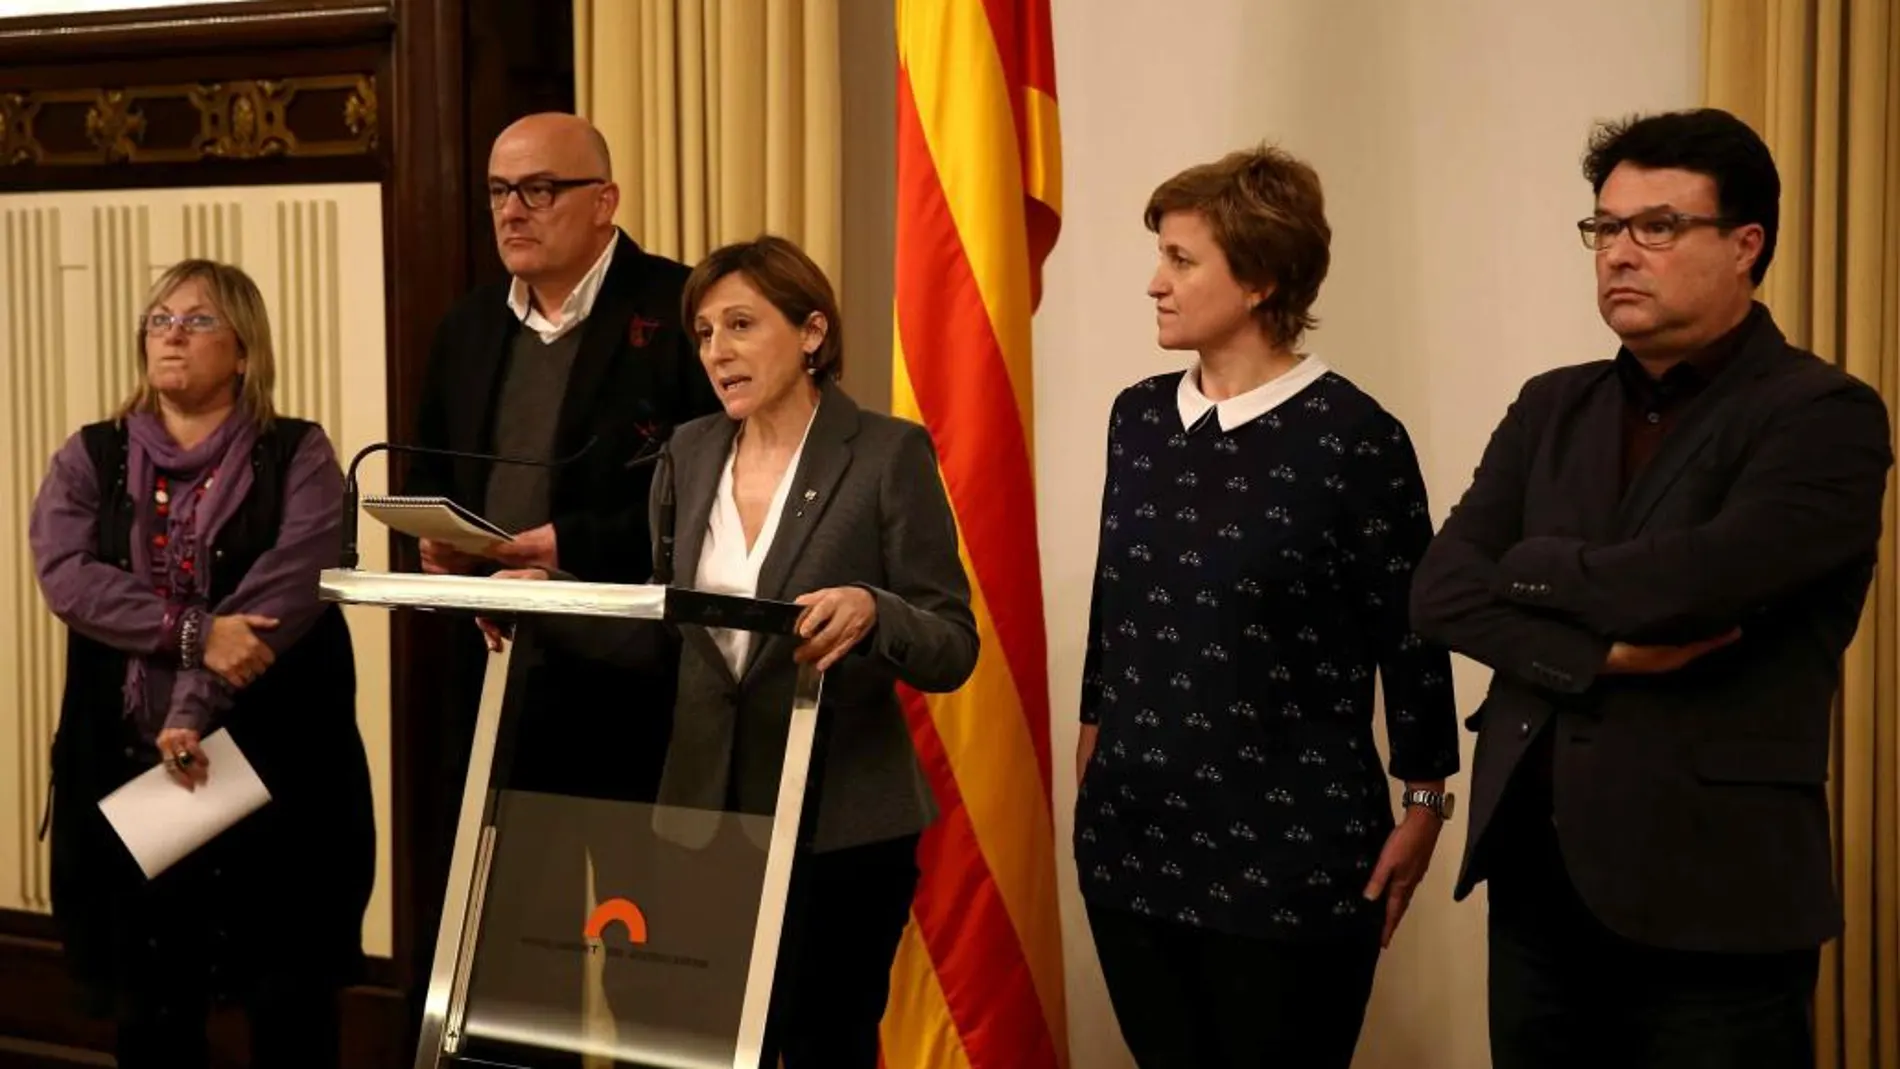 Carme Forcadell, junto a los miembros de la Mesa, Lluís Corminas, Anna Simò, Joan Josep Nuet, y Ramona Barrufet